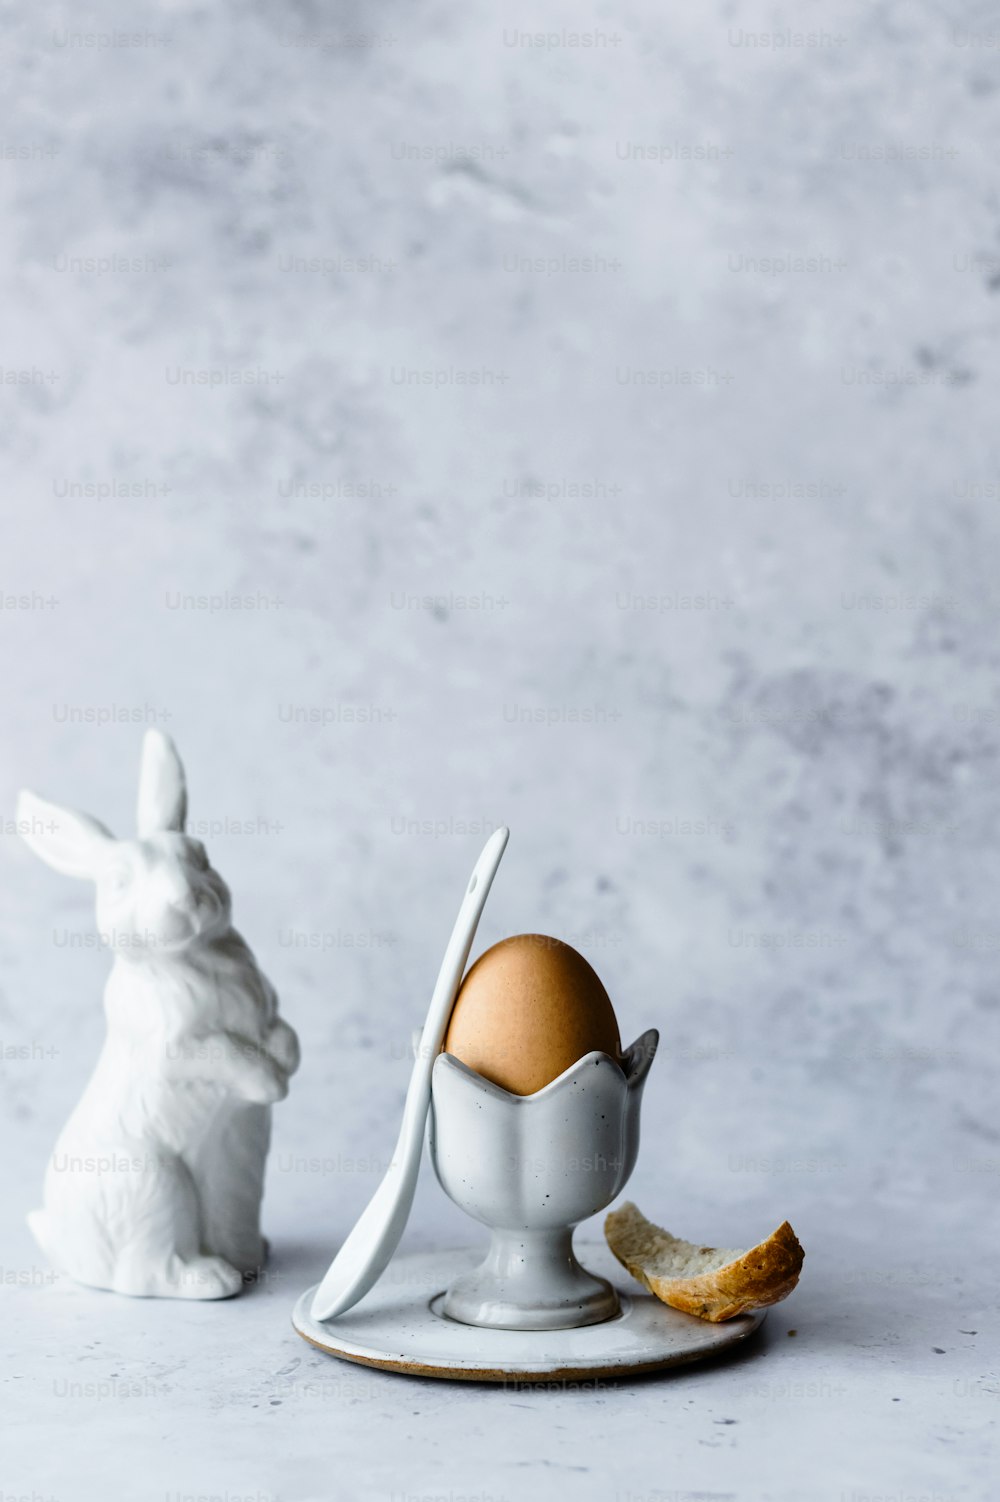 Una figura de conejito blanco junto a un huevo roto